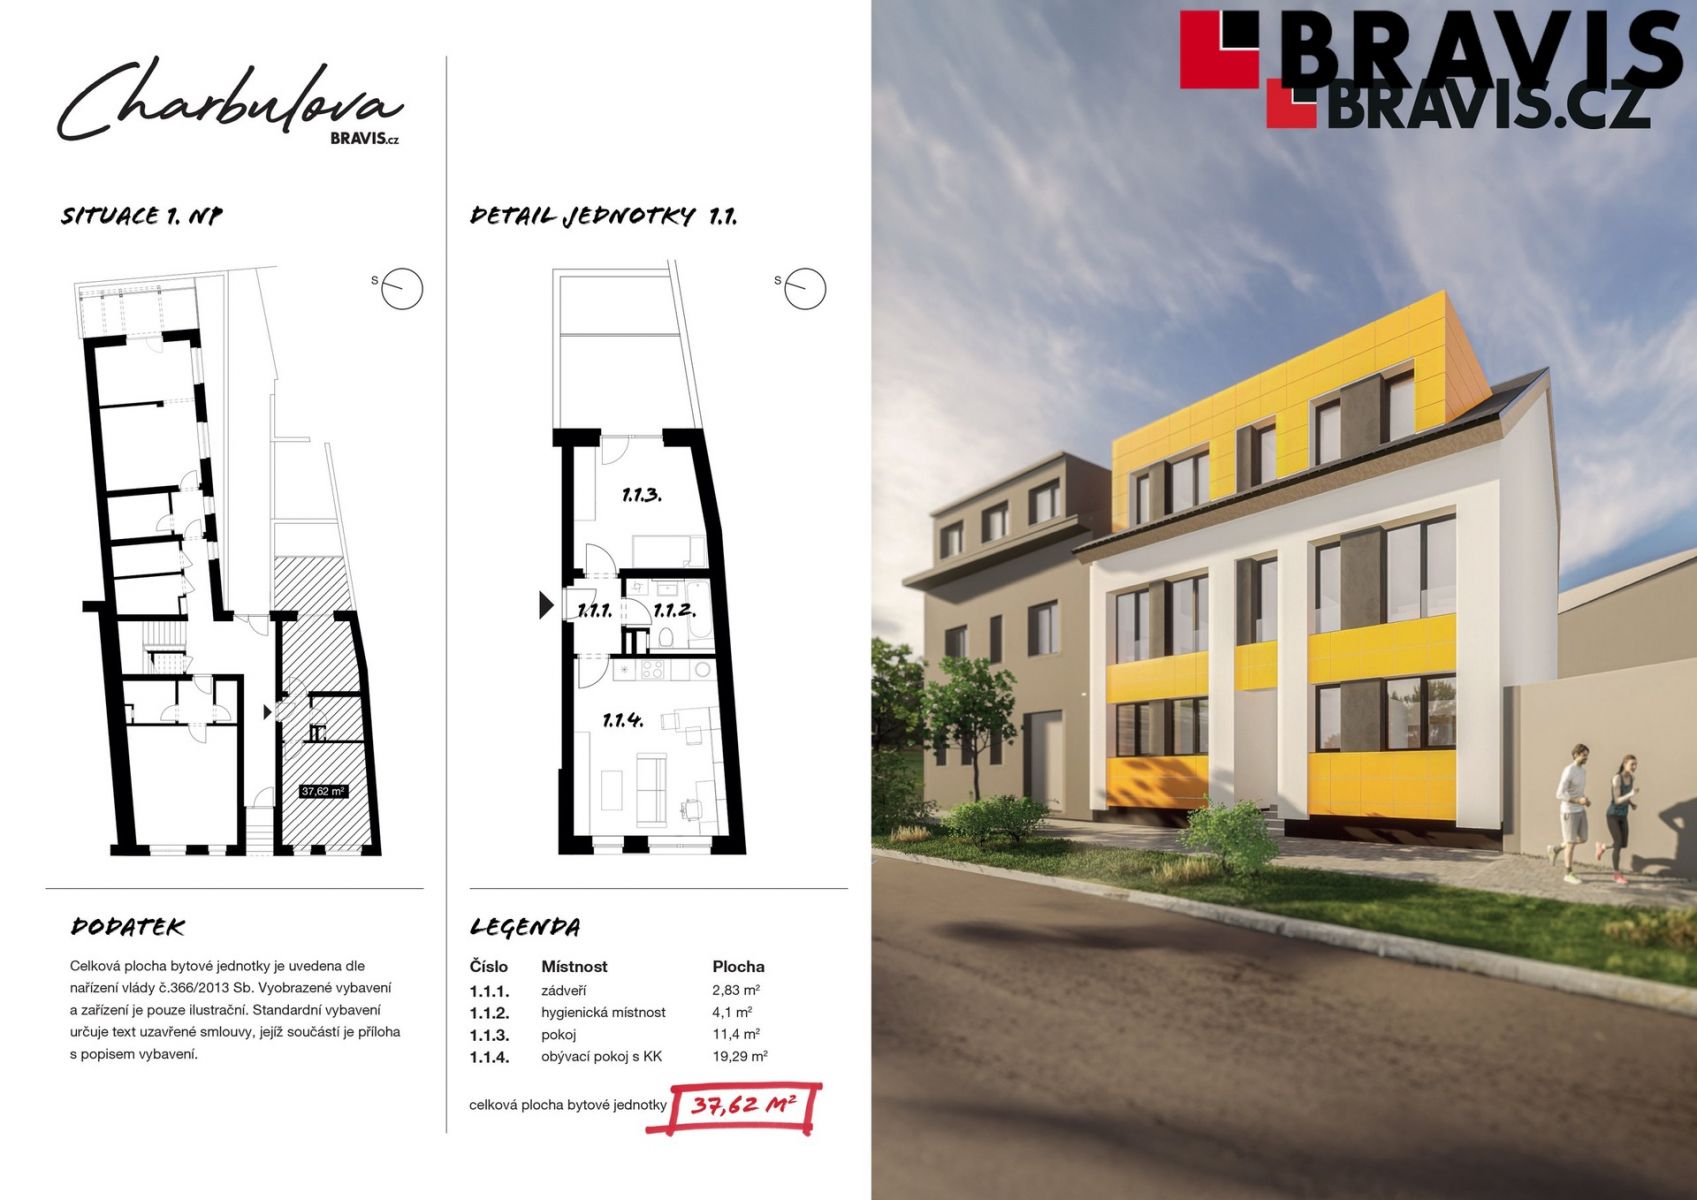 Prodej novostavby bytu 2+kk, ulice Charbulova, Brno - Černovice, včetně parkovacího stání, obrázek č. 2